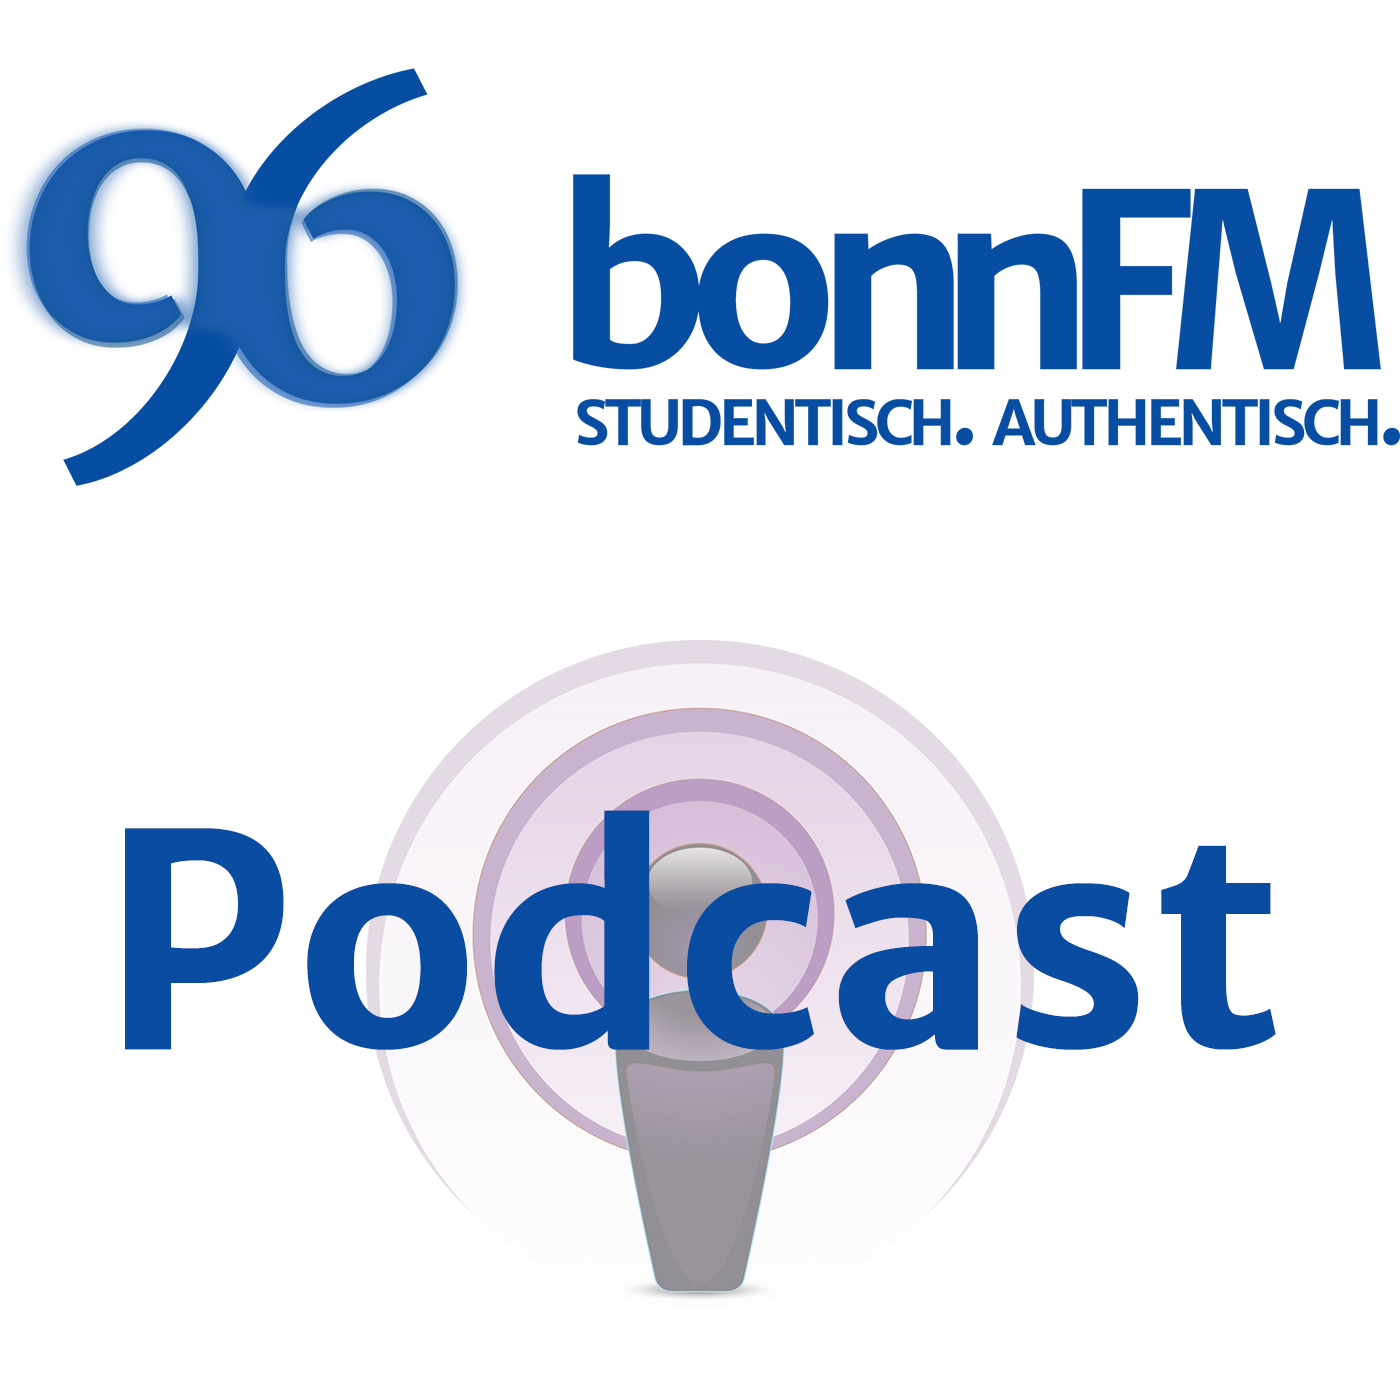 bonnFM